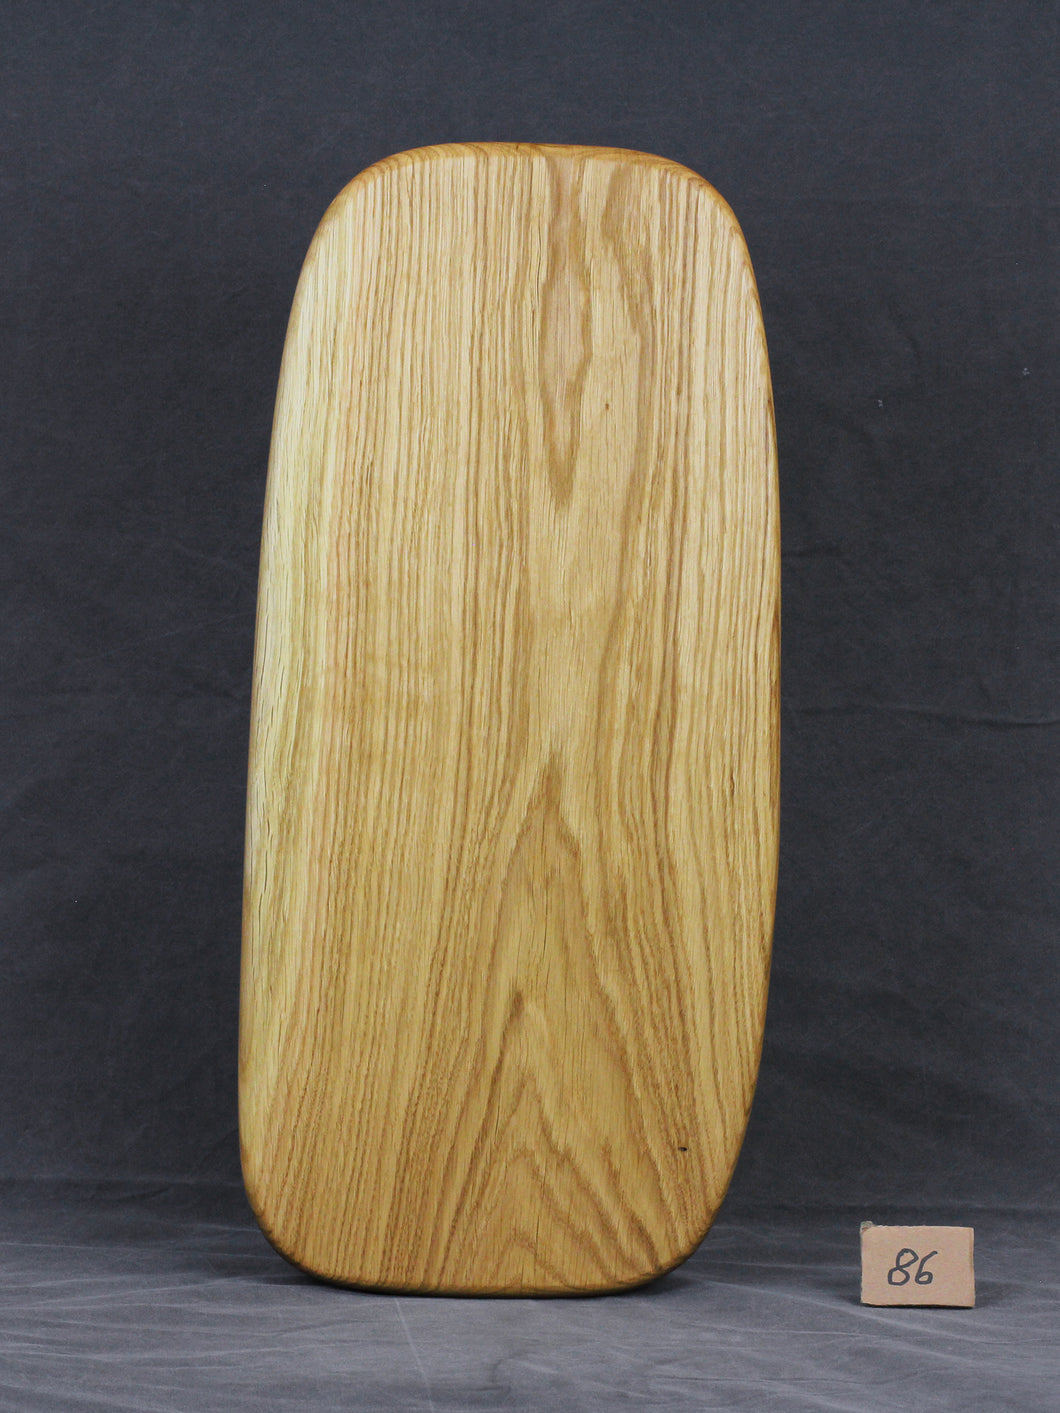 Brotzeitbrett, Servierbrett, Schneidebrett, Cuttingboard, Charcuterie Board. No. 86 - ca. 60 cm. Aus einem Stück Eiche - handgefertigt.